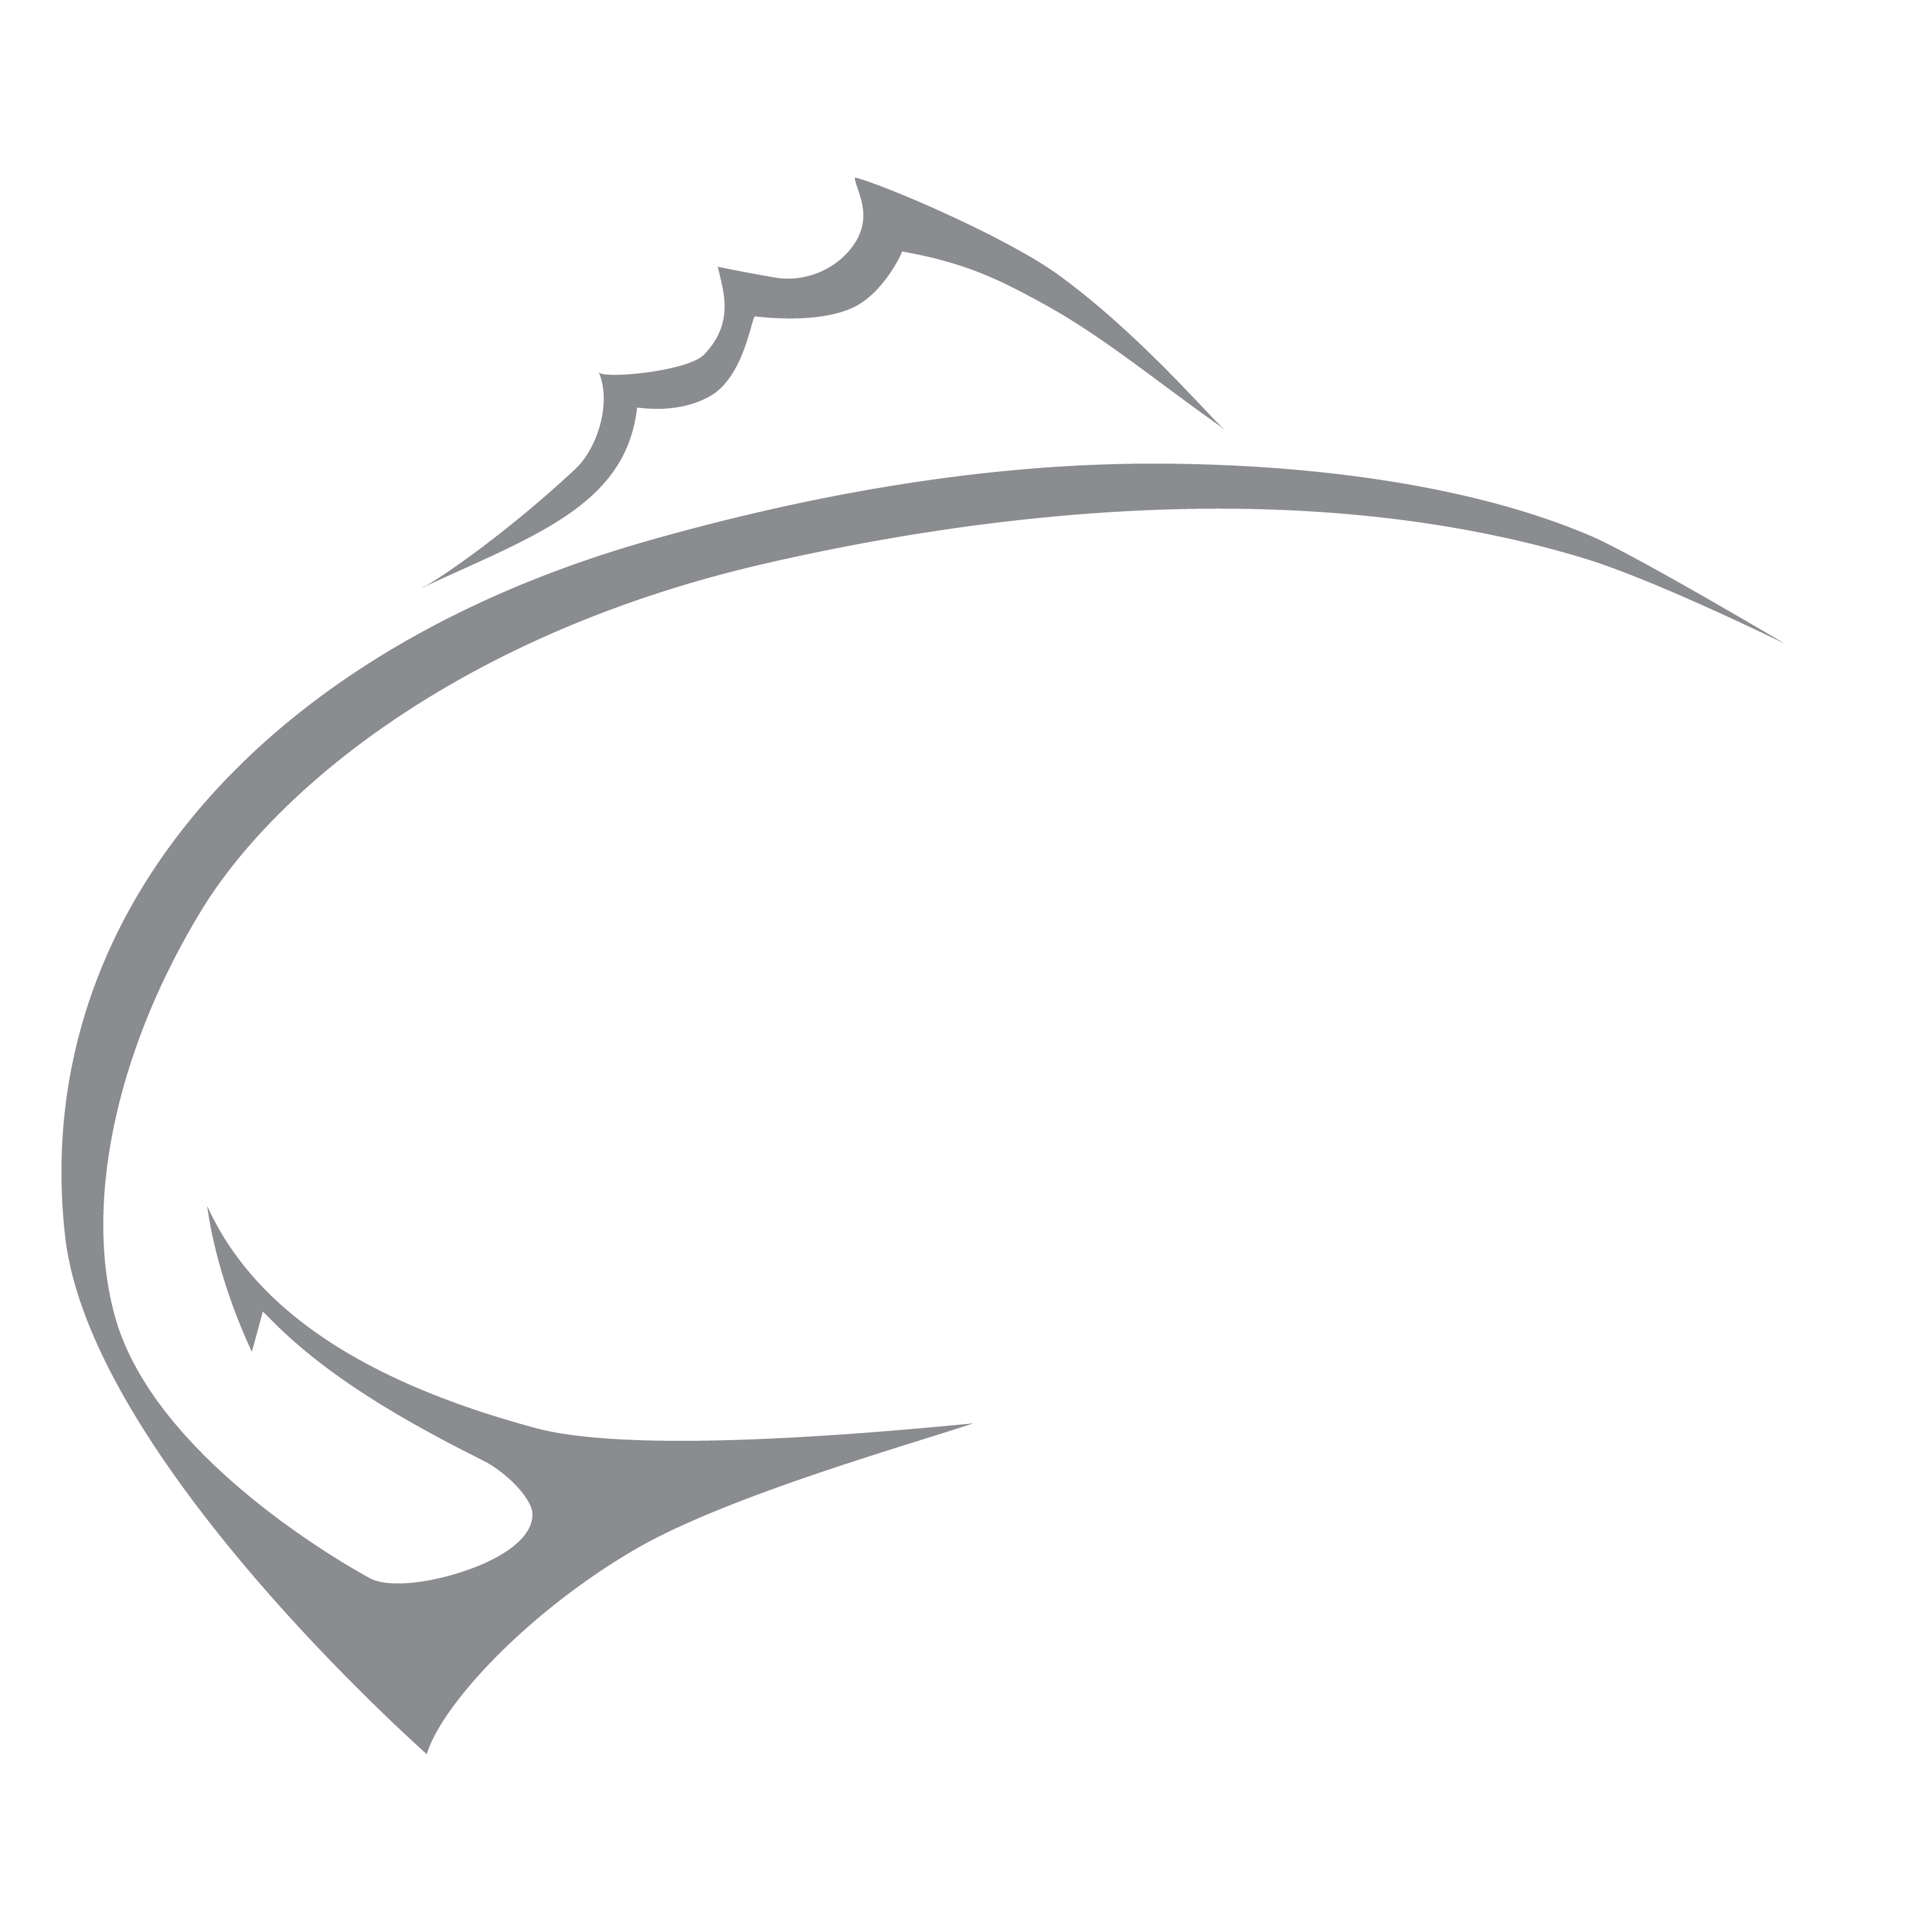 ElliottRods_logo_Revers-01